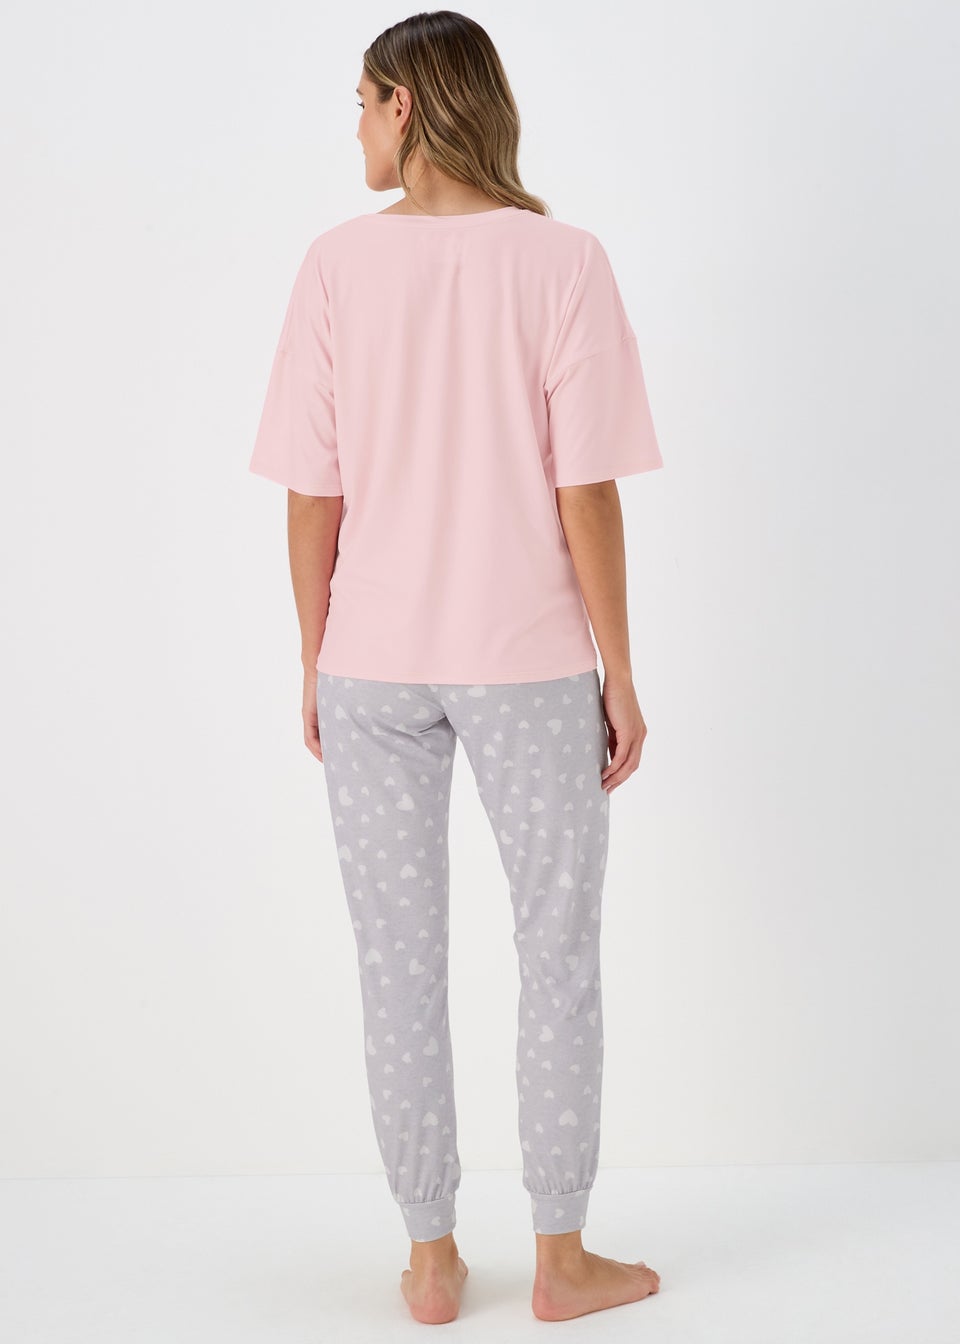 Pink & Grey Best Mum Pyjama Set